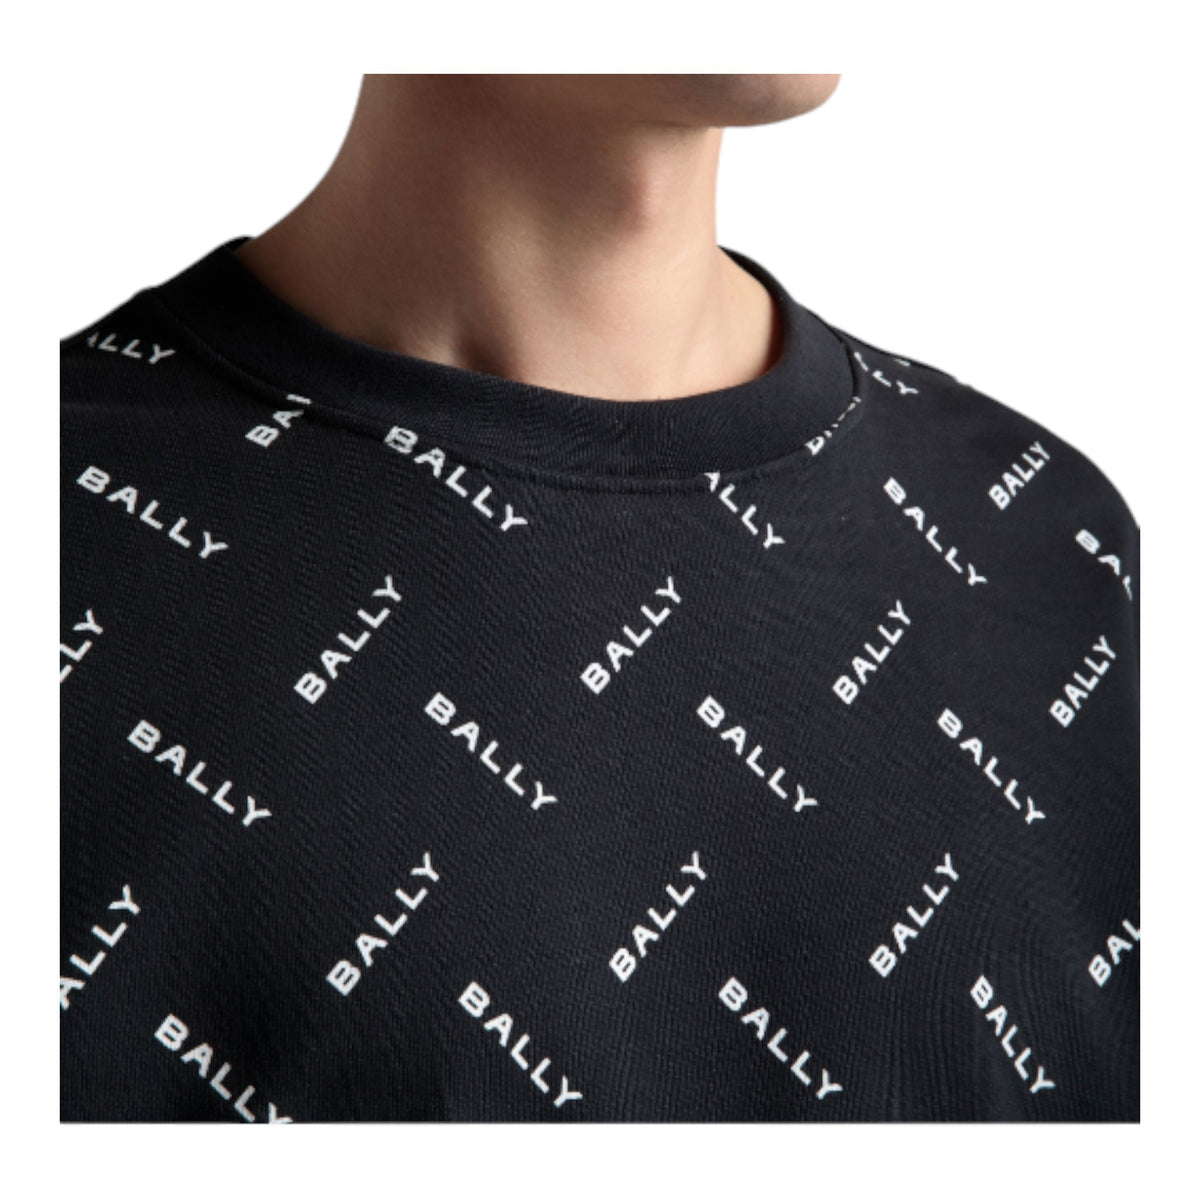 Bally Men's Monogram Sweatshirt in Dark Blue Cotton